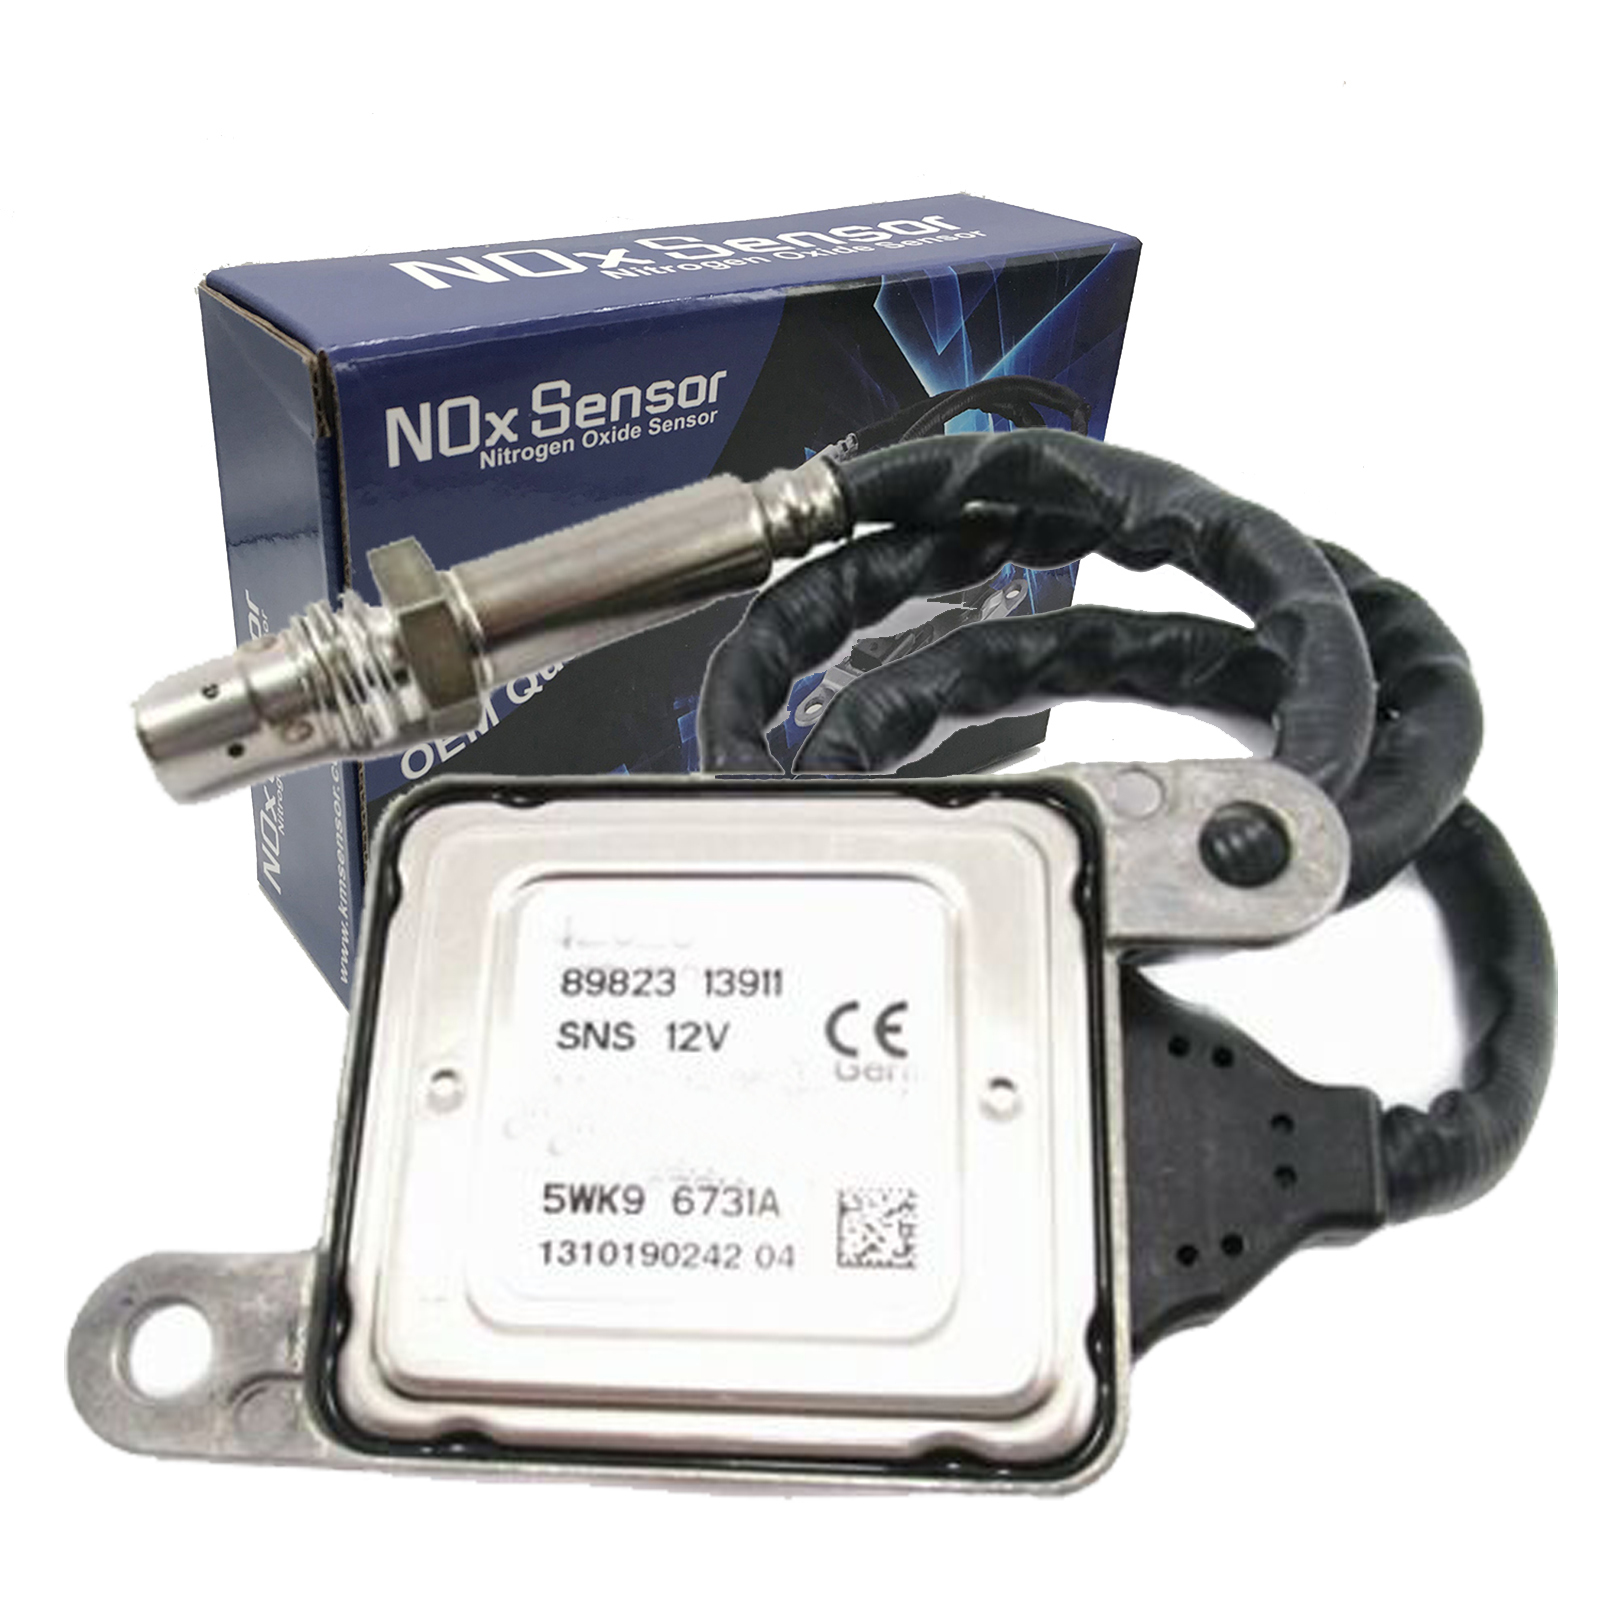 kmdiesel 5WK9 6731A Nitrogen Oxide Sensor Nox Sensor 8982313911 Fits Isuzu NRR NQR NPR-HD NPR Diesel 10-13 